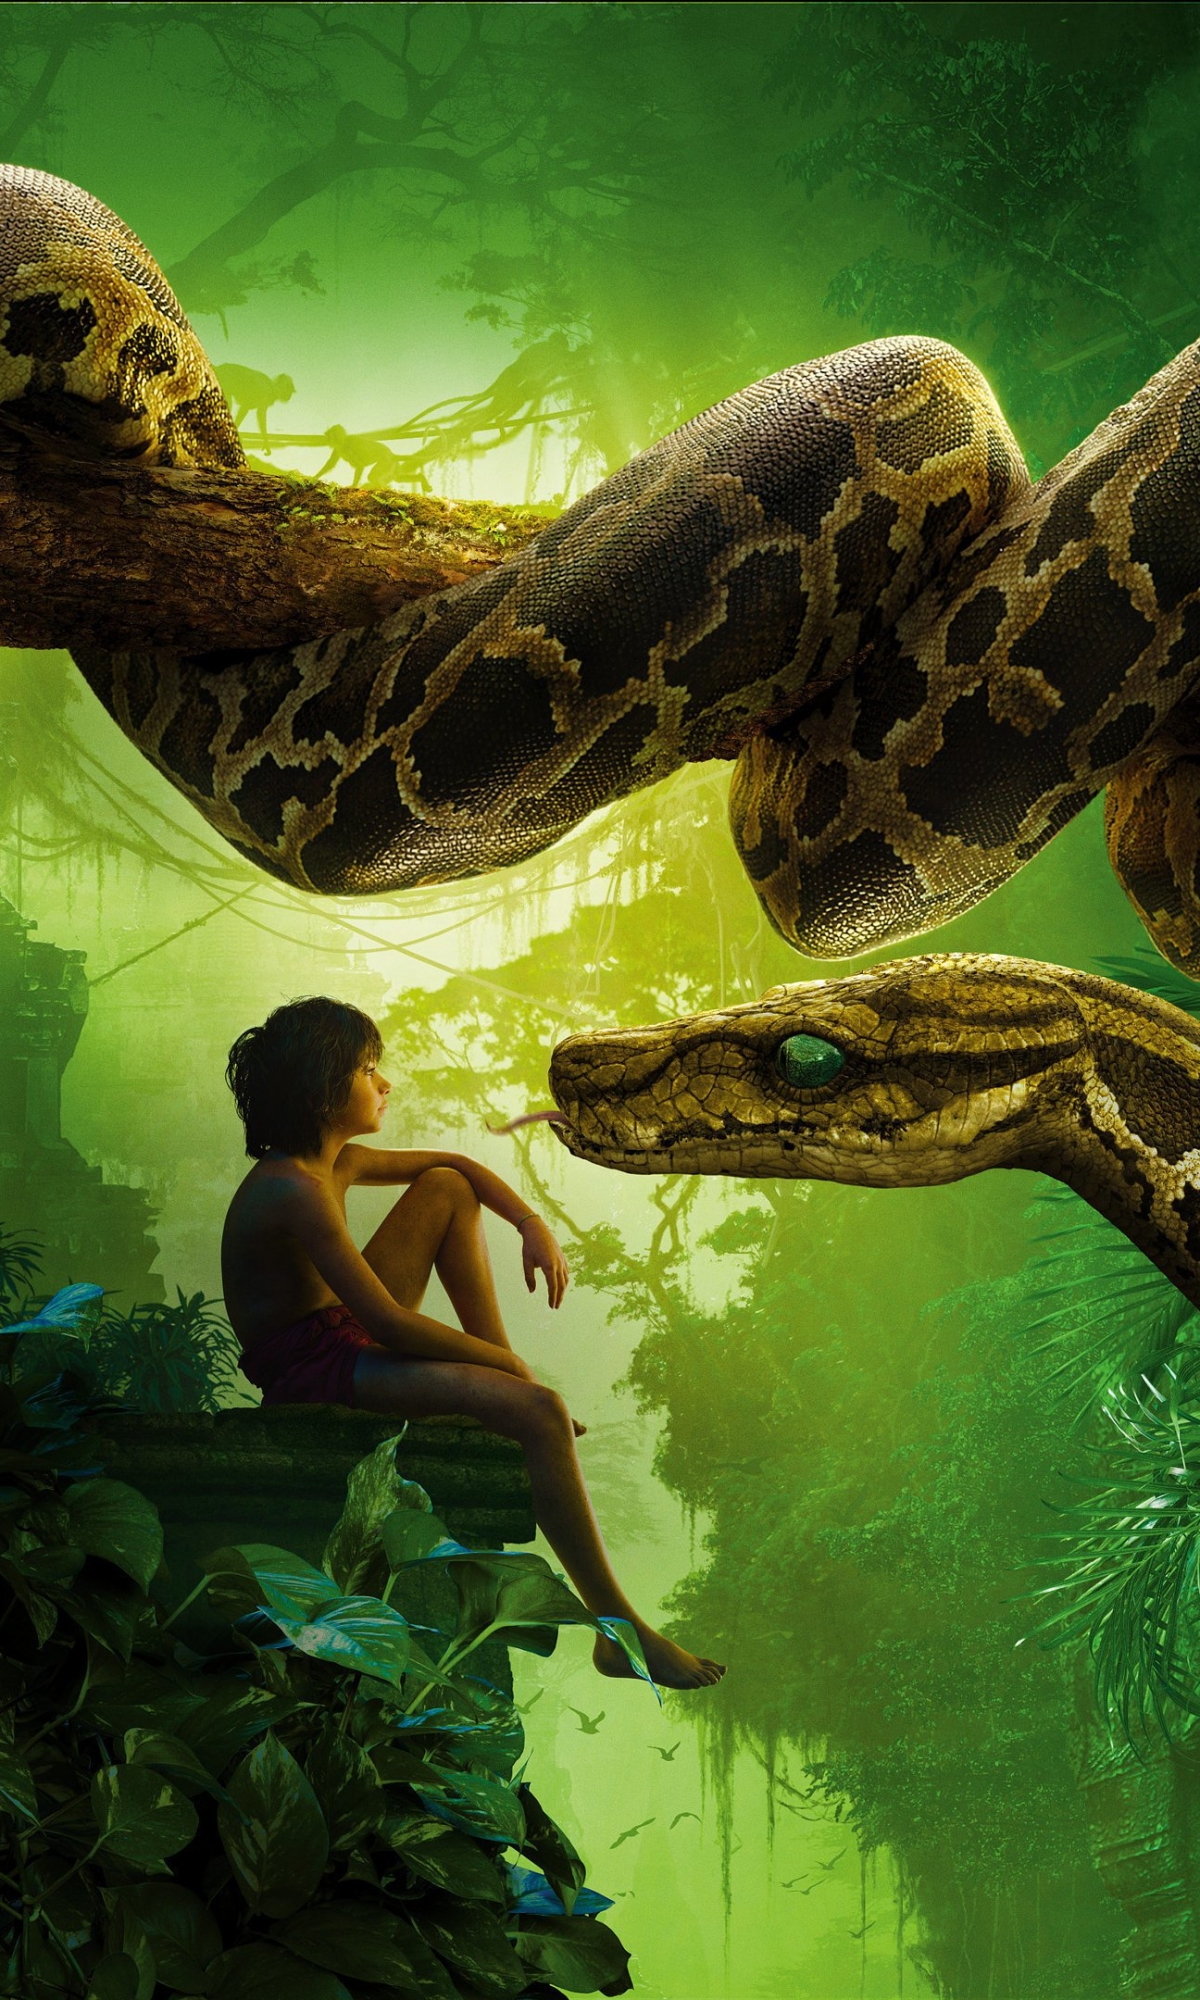 mowgli, movie, the jungle book (2016), snake, kaa (jungle book), the jungle book 8K